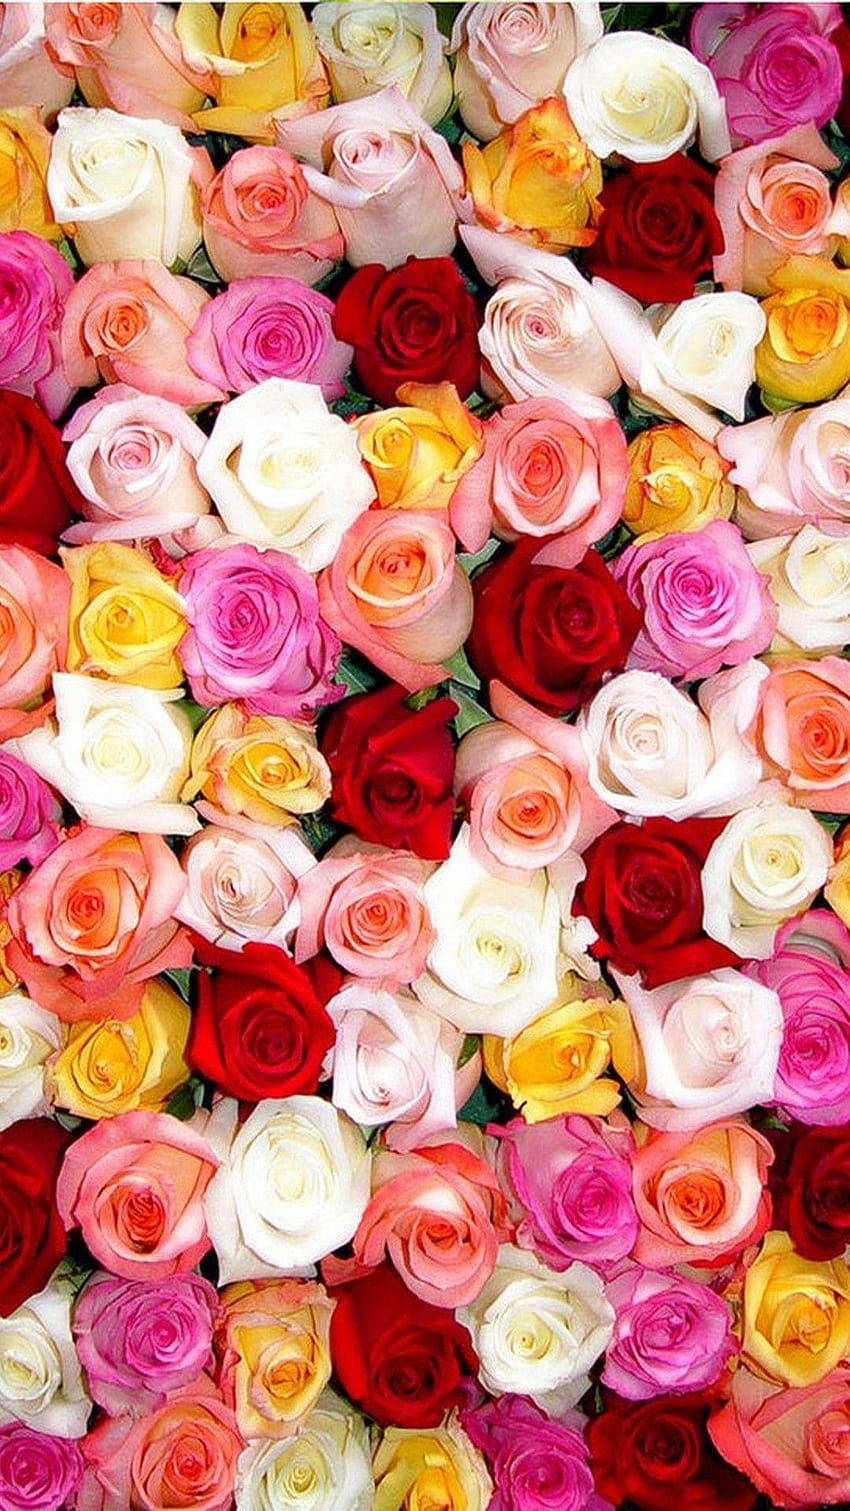 Rose iPhone, cute roses HD phone wallpaper | Pxfuel